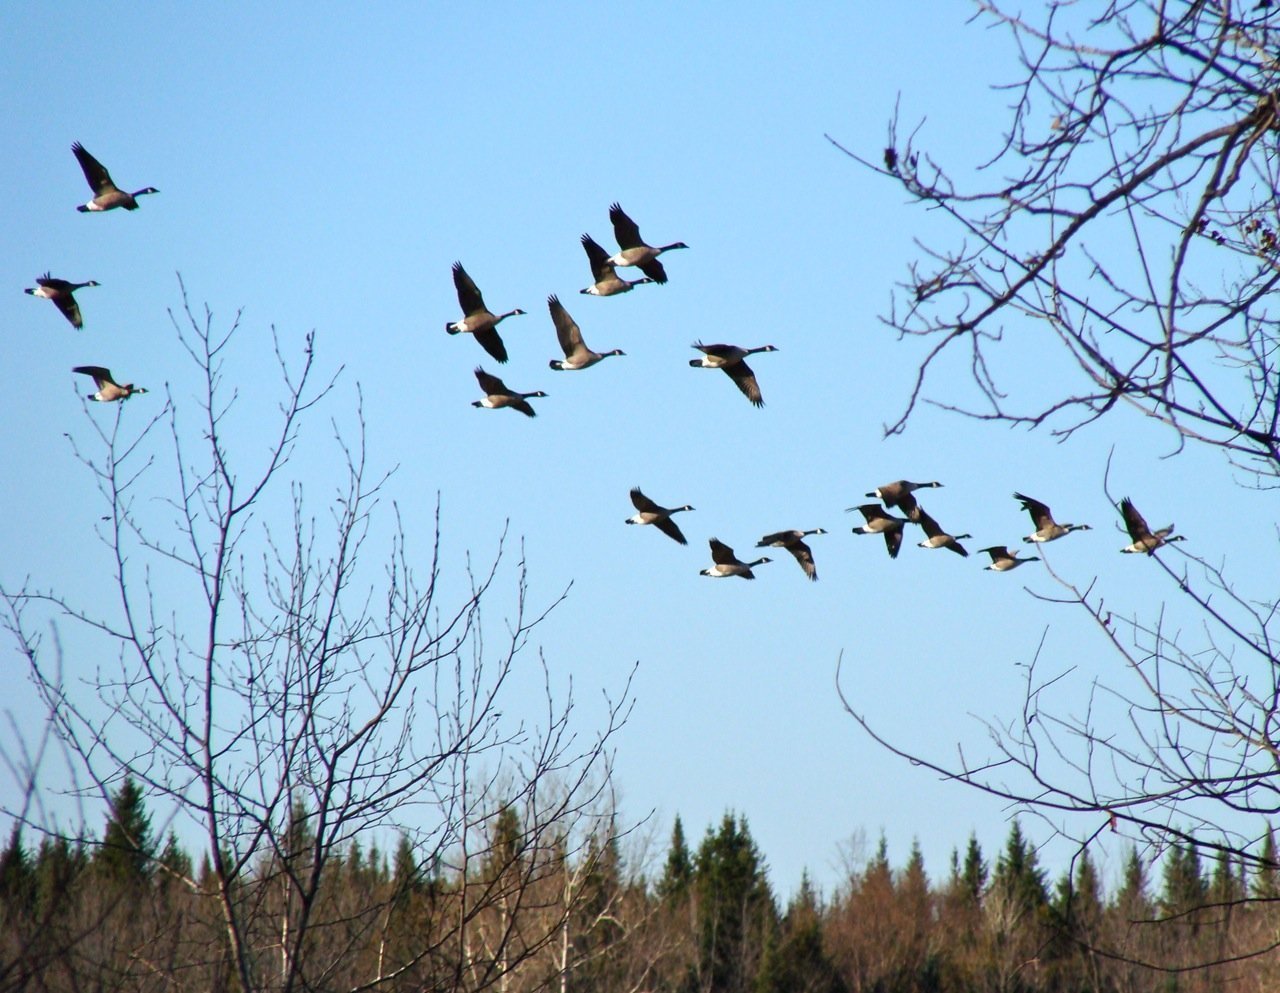 Возвращение перелётных птиц в родные края весной. Перелетные птицы прилетают весной. Ранней весной перелётные птицы возвращаются в родные края ..